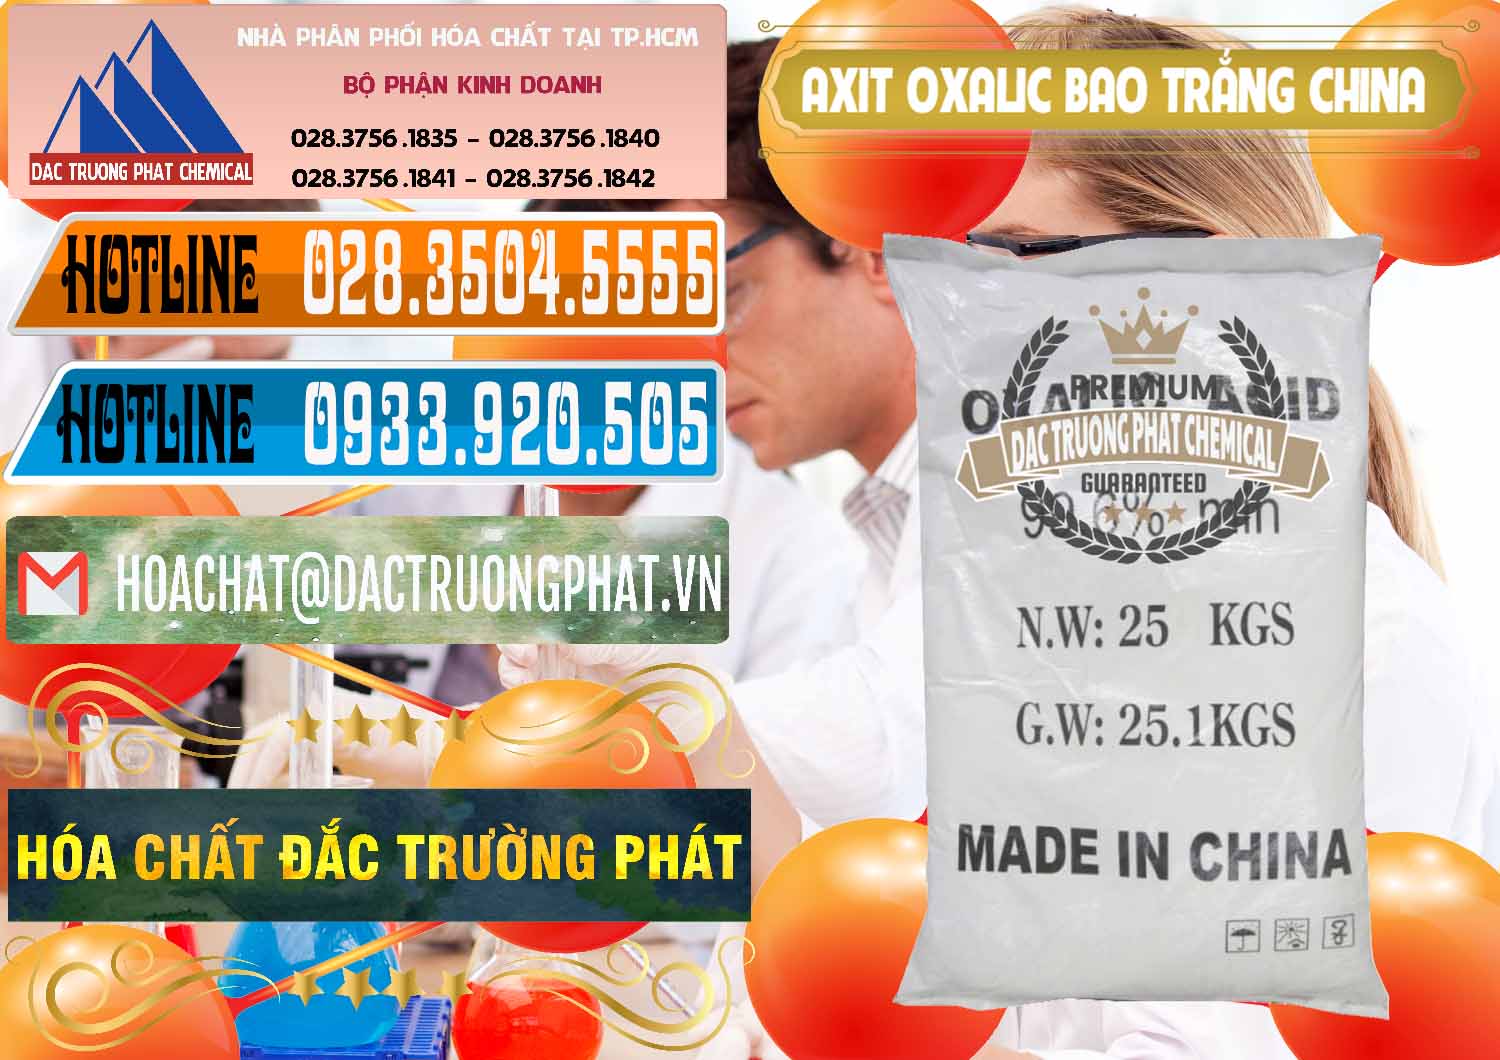 Chuyên kinh doanh & bán Acid Oxalic – Axit Oxalic 99.6% Bao Trắng Trung Quốc China - 0270 - Phân phối - bán hóa chất tại TP.HCM - stmp.net